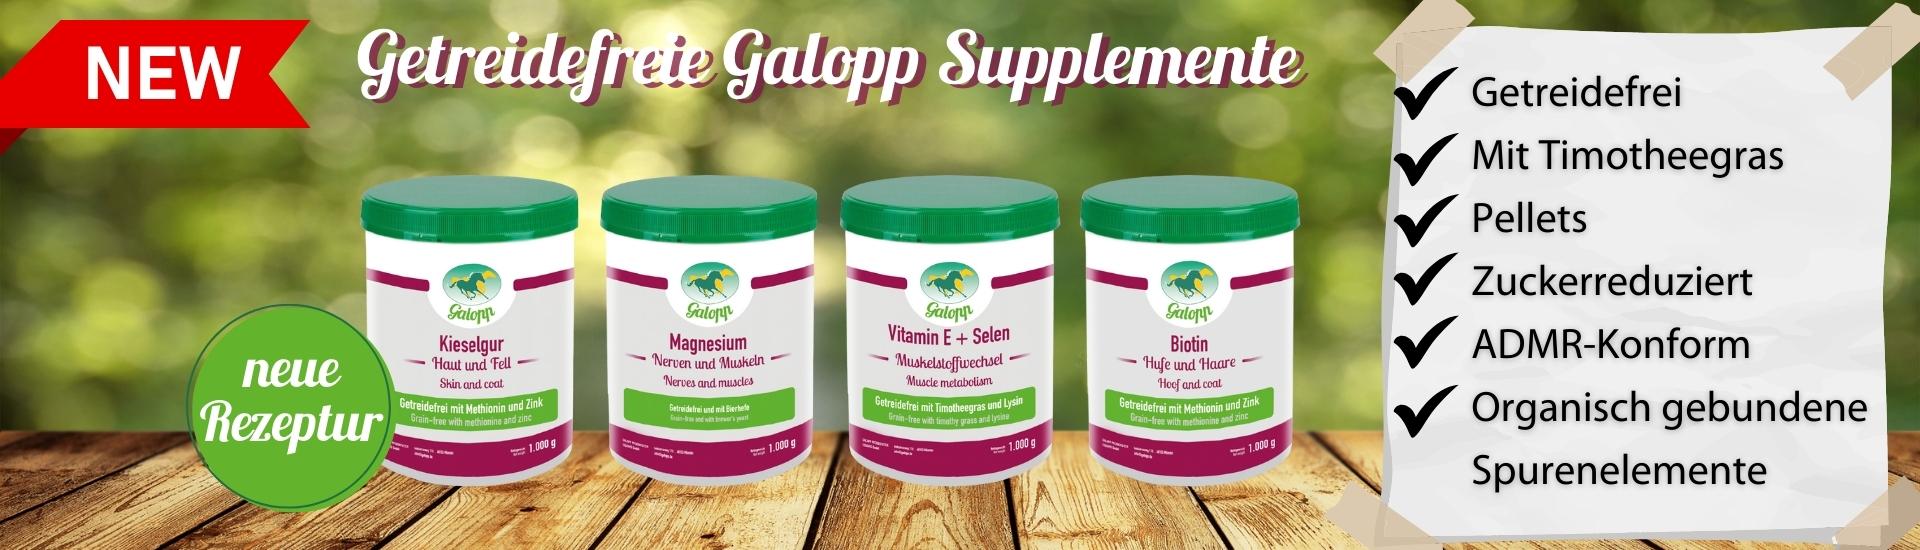 Getreidefreie Galopp Supplemente